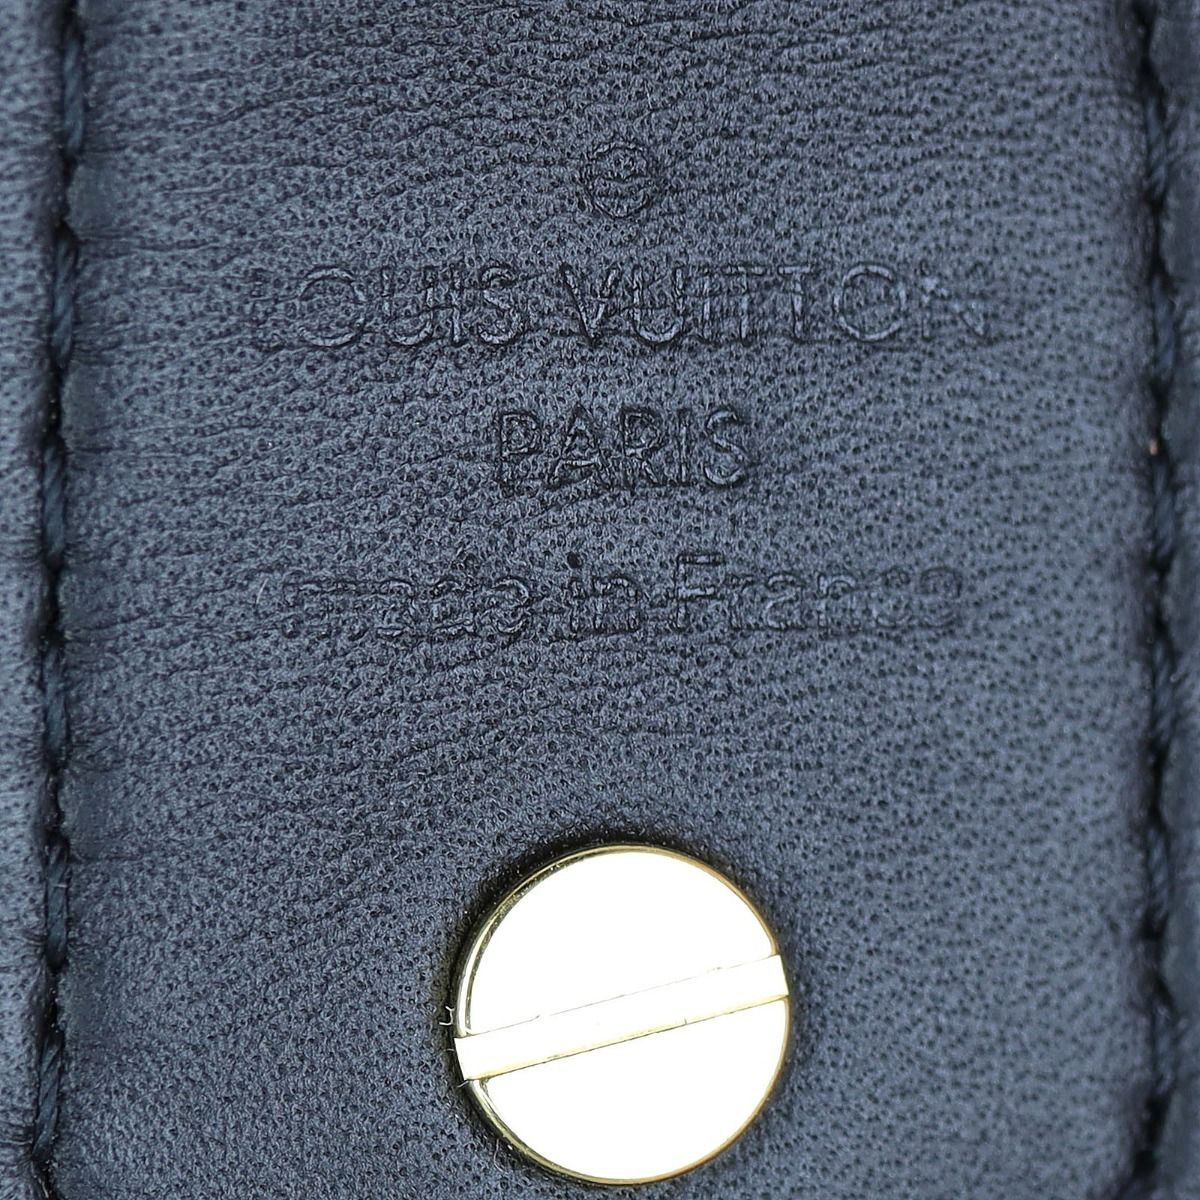 LOUIS VUITTON Reverse Monogram Bandouliere Shoulder Strap XL Black 839147